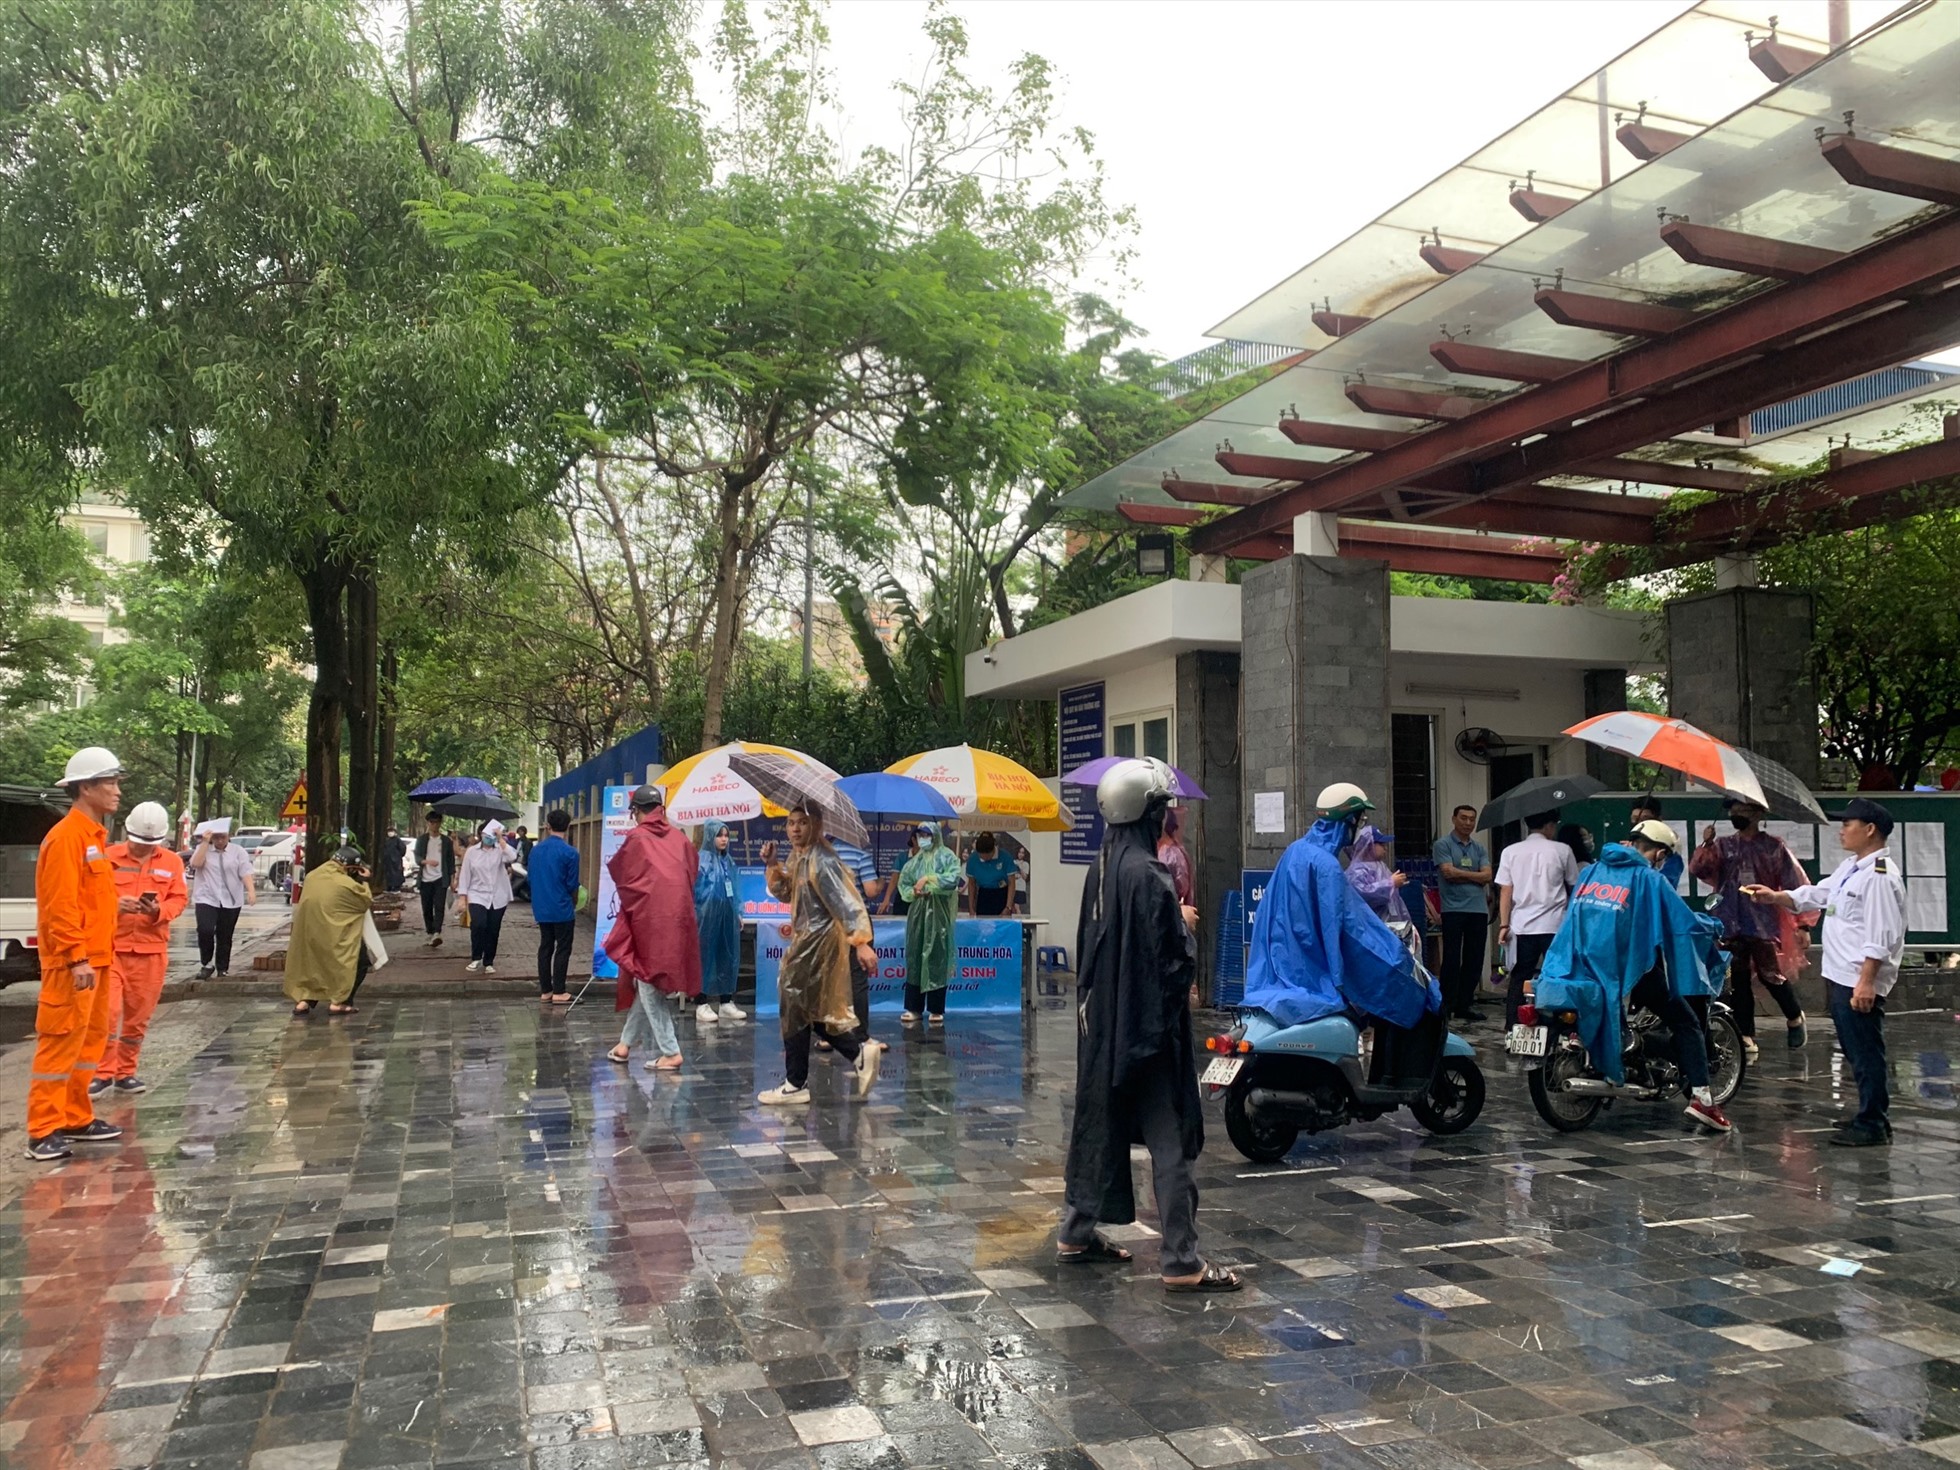 Theo ghi nhận tại Hà Nội, thời tiết sáng sớm nay có mưa nhỏ. Các thí sinh và phụ huynh khi di chuyển tới điểm thi phải sử dụng áo mưa và ô.